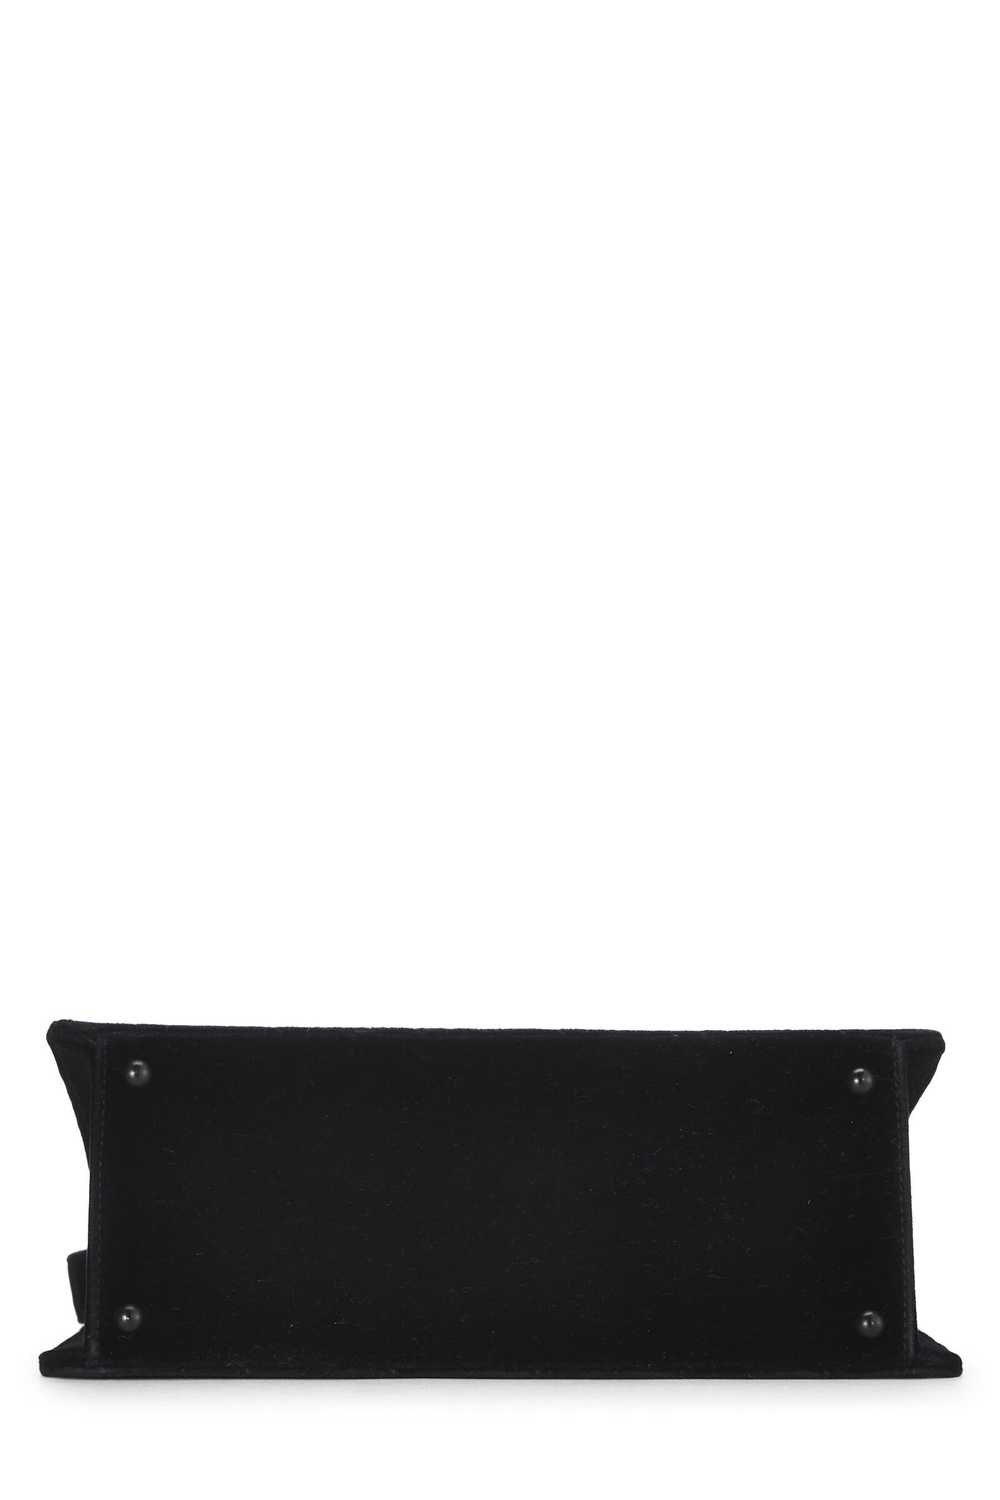 Black Velour Shoulder Bag - image 5